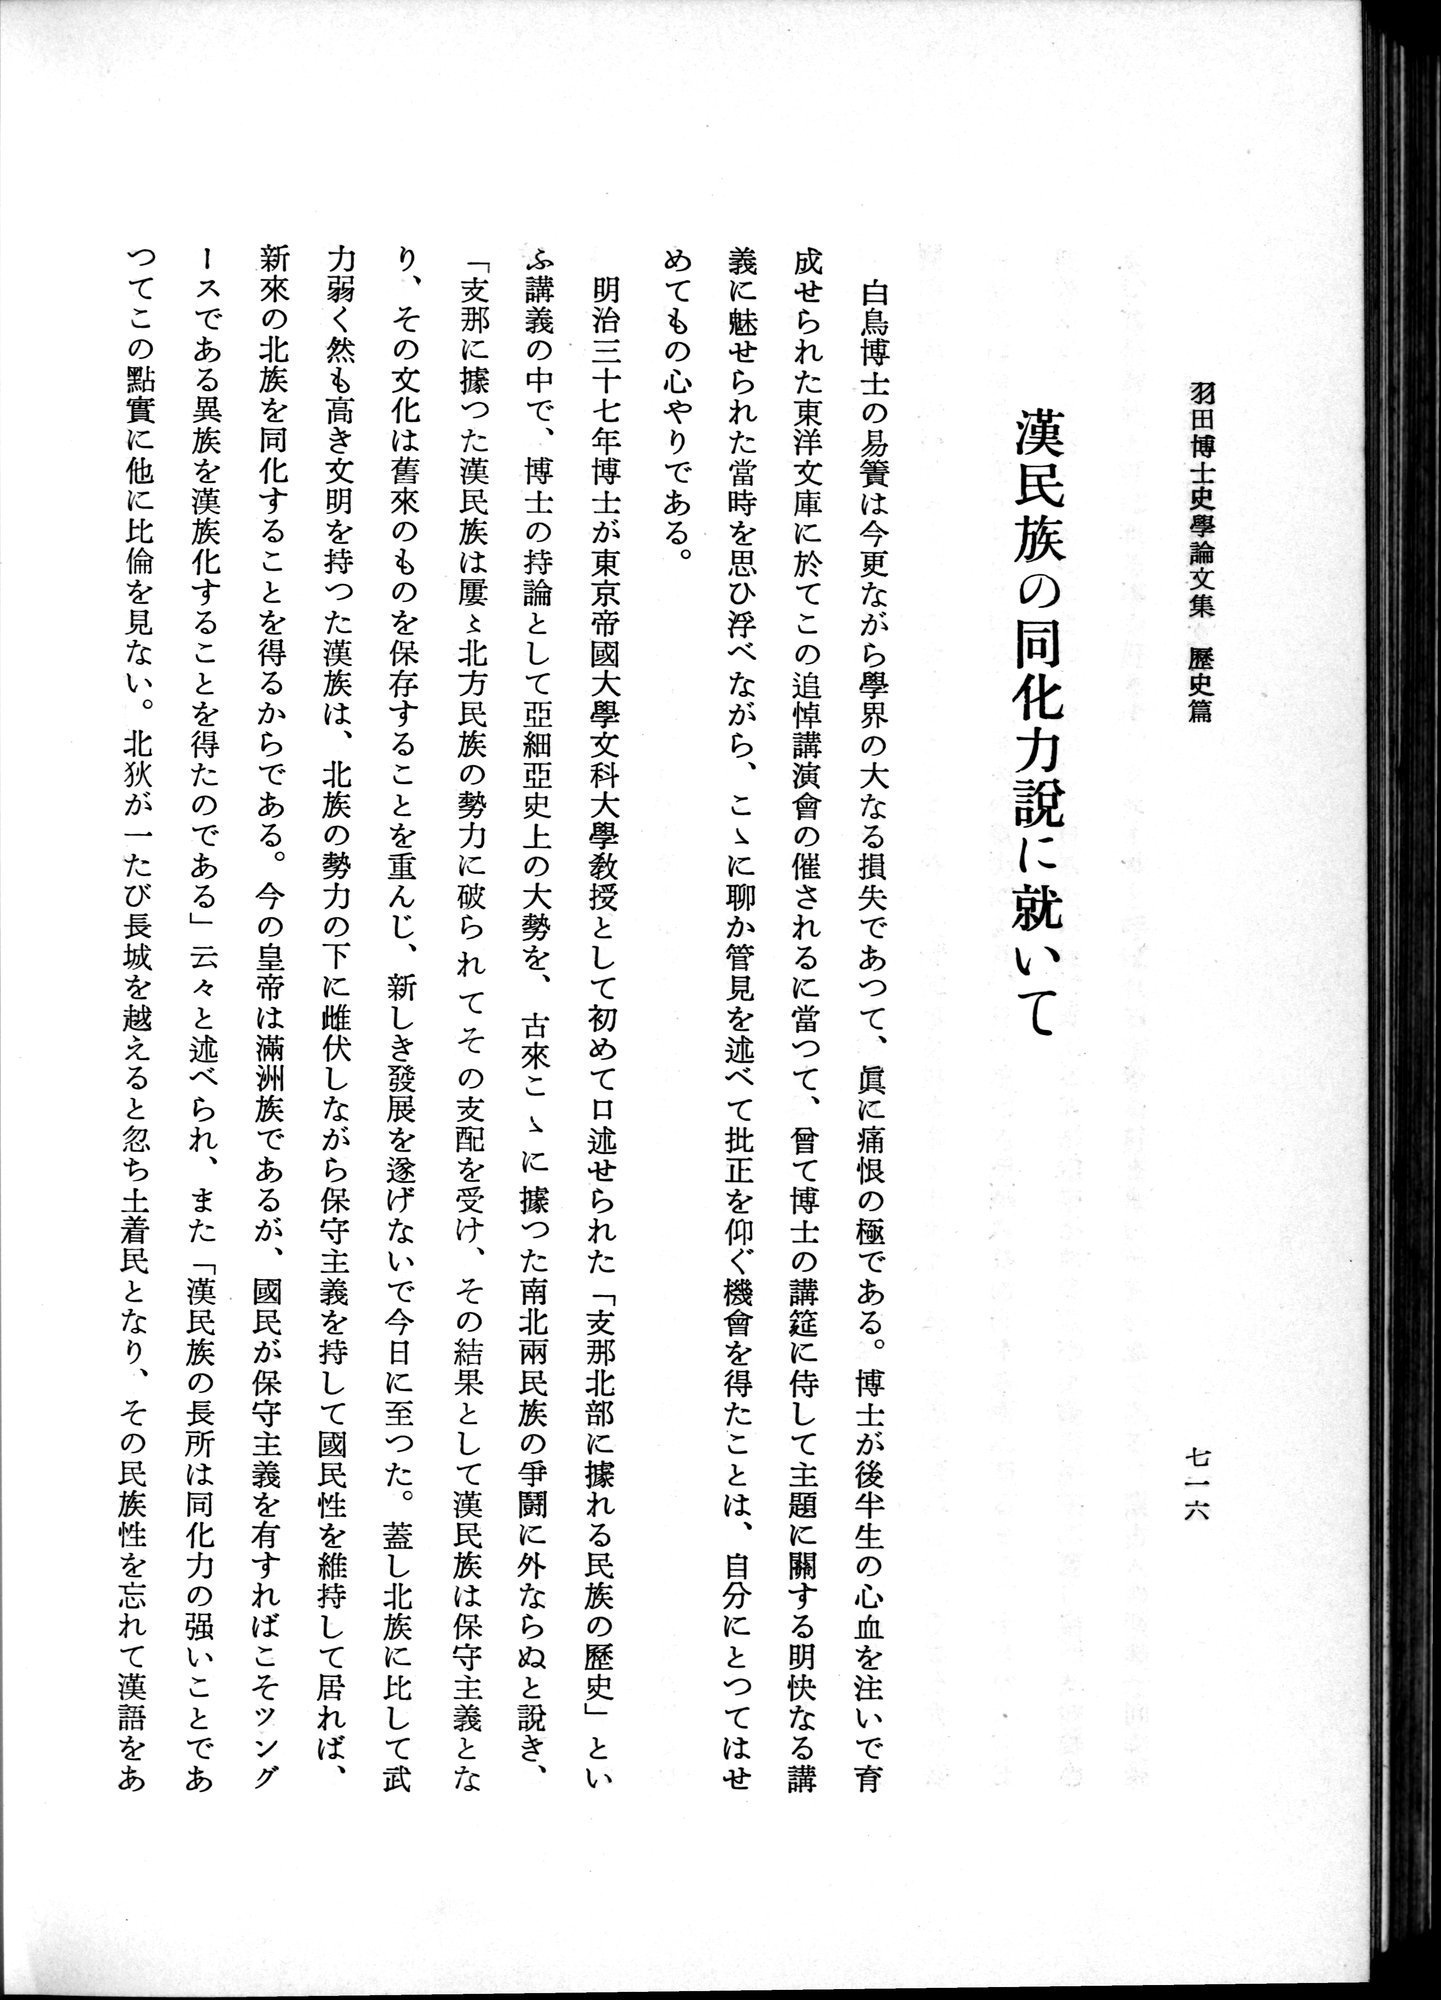 羽田博士史学論文集 : vol.1 / Page 754 (Grayscale High Resolution Image)